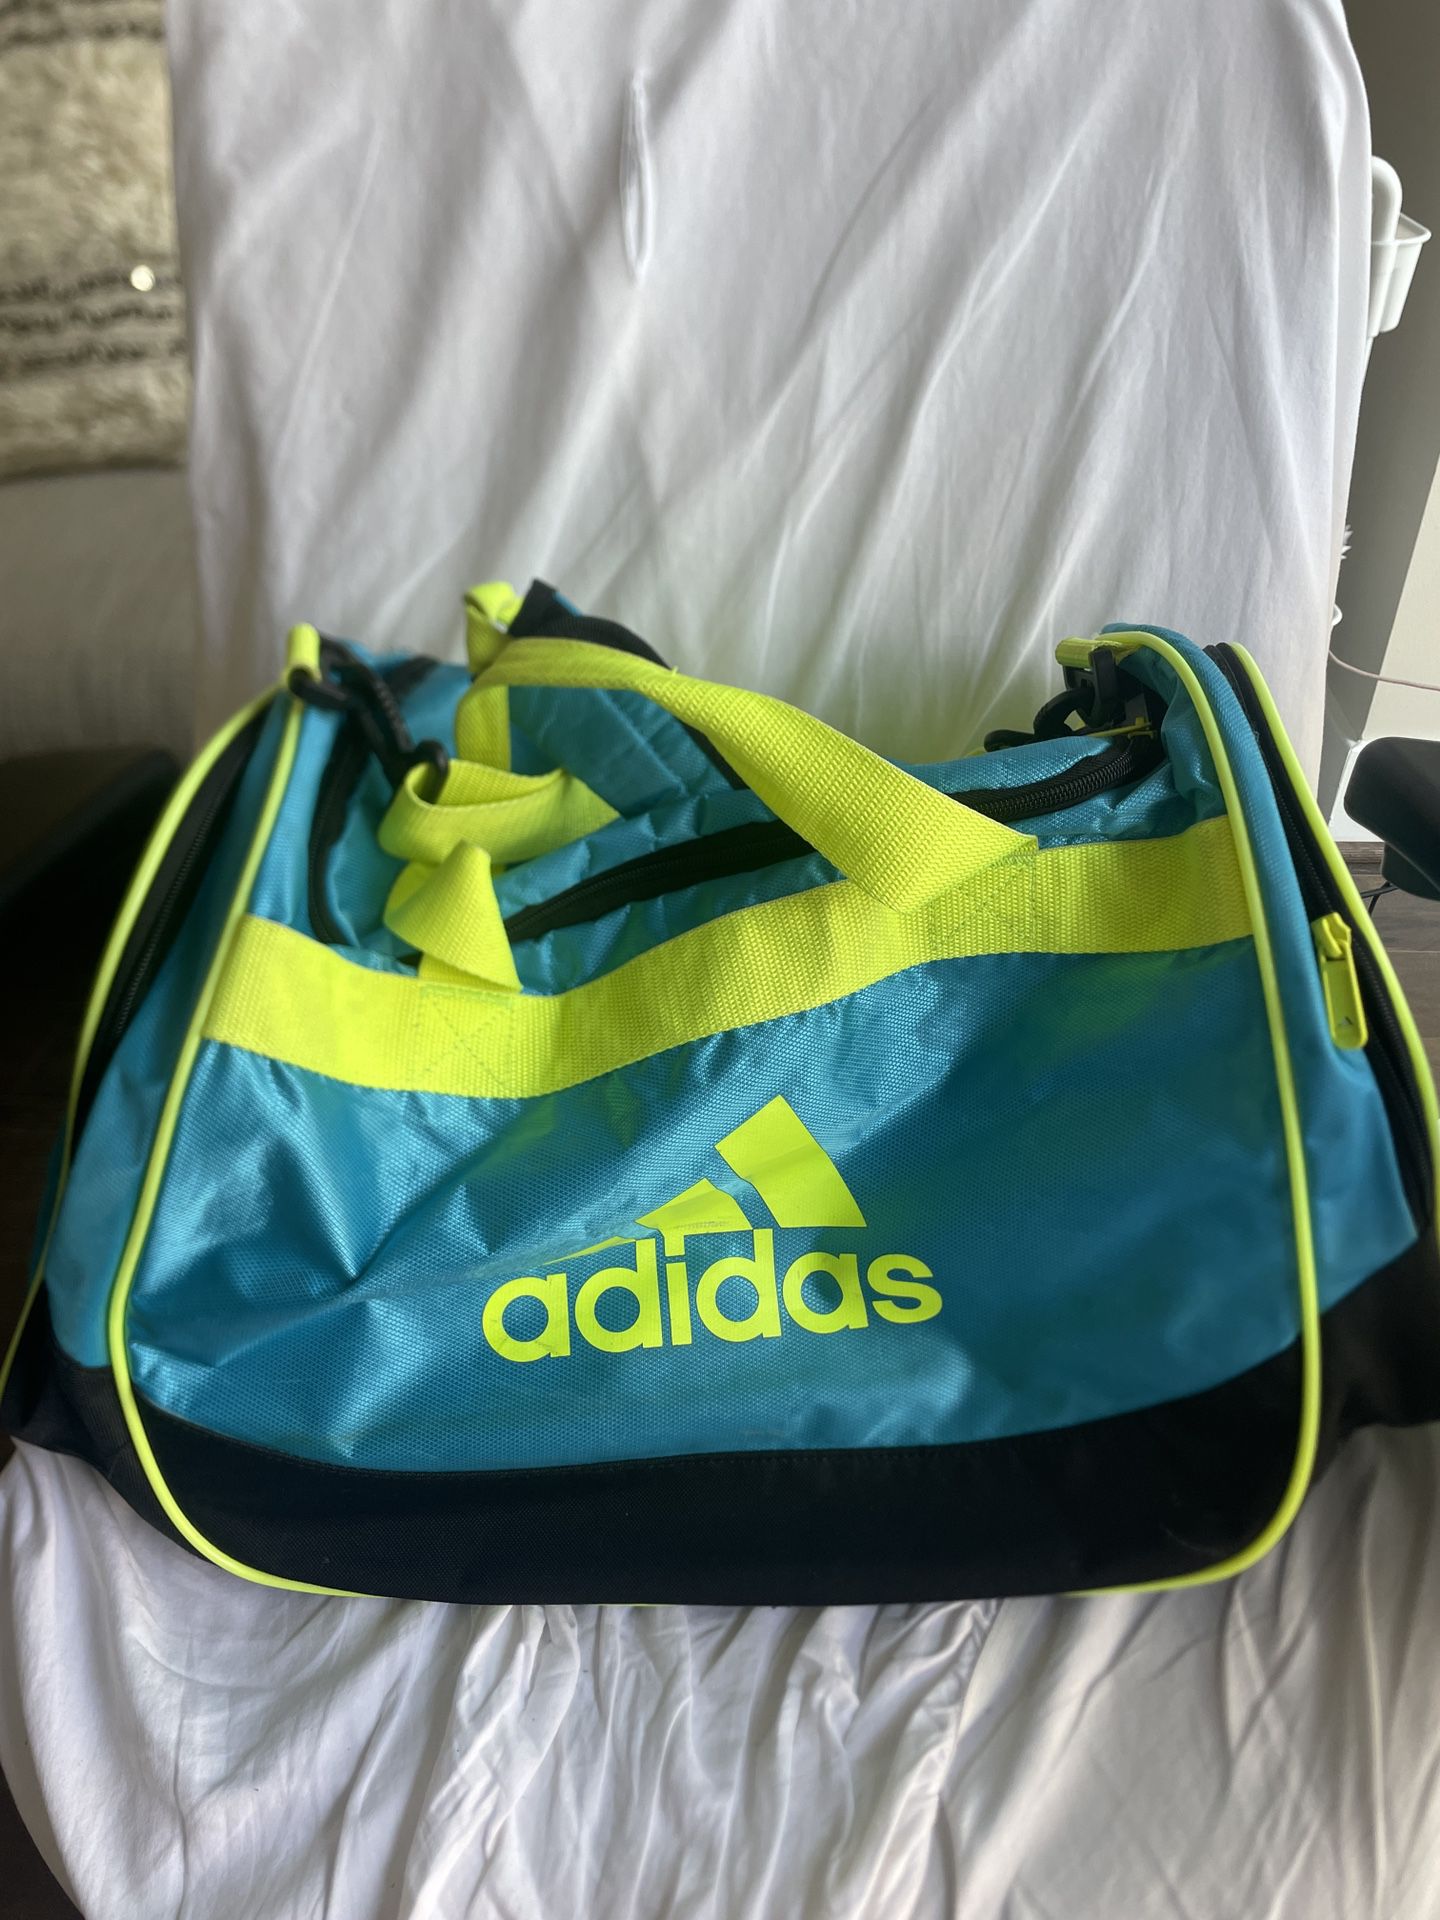 Adidas Duffle Gym Bag 